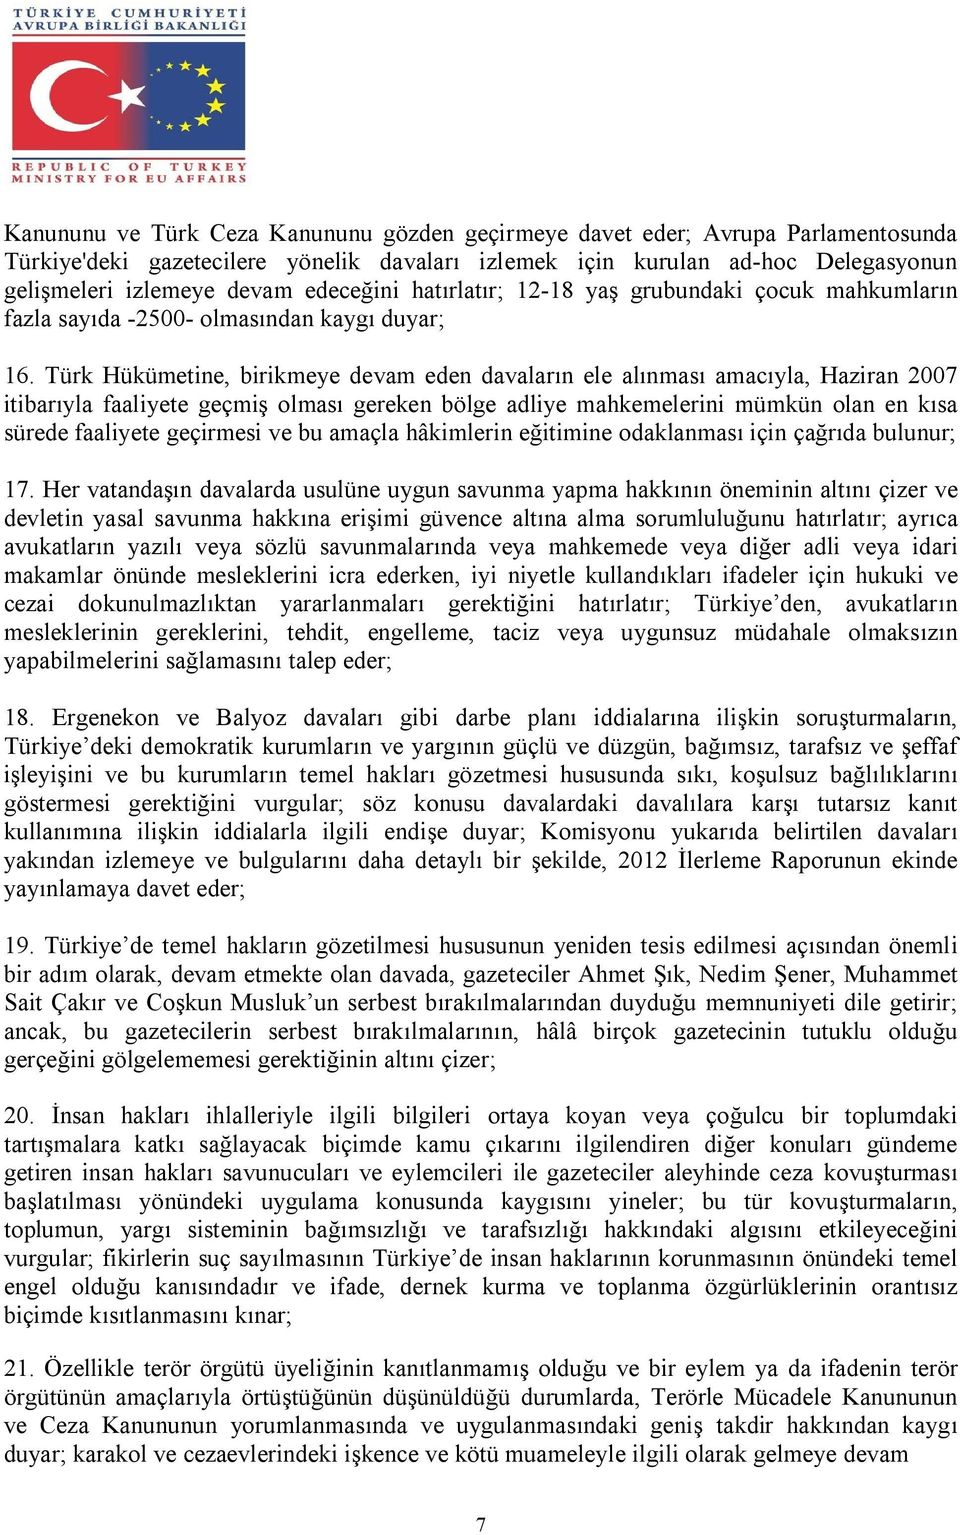 Türk Hükümetine, birikmeye devam eden davaların ele alınması amacıyla, Haziran 2007 itibarıyla faaliyete geçmiş olması gereken bölge adliye mahkemelerini mümkün olan en kısa sürede faaliyete